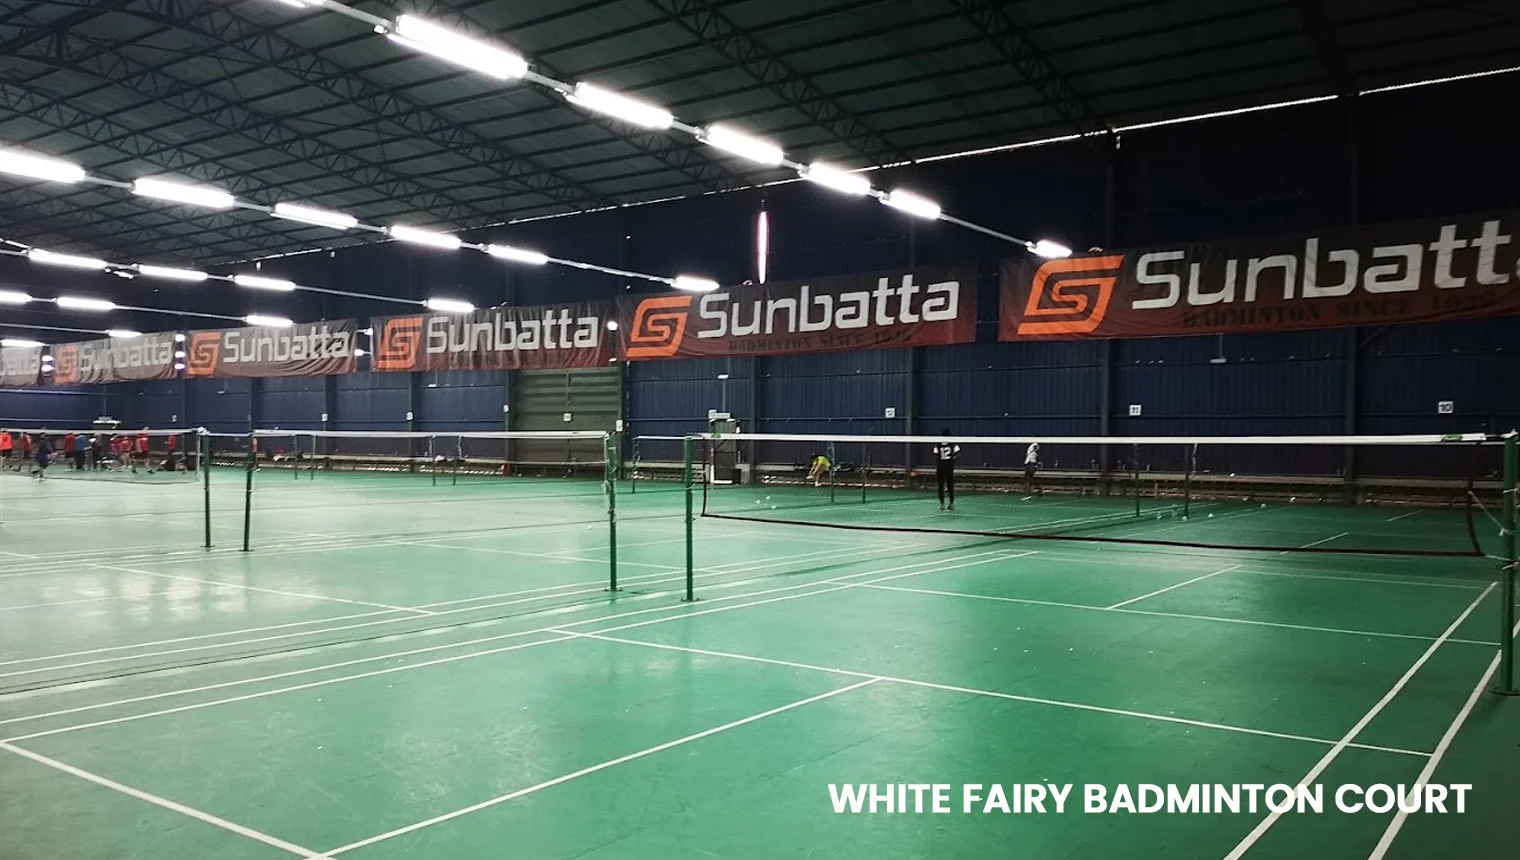 White Fairy Badminton Court